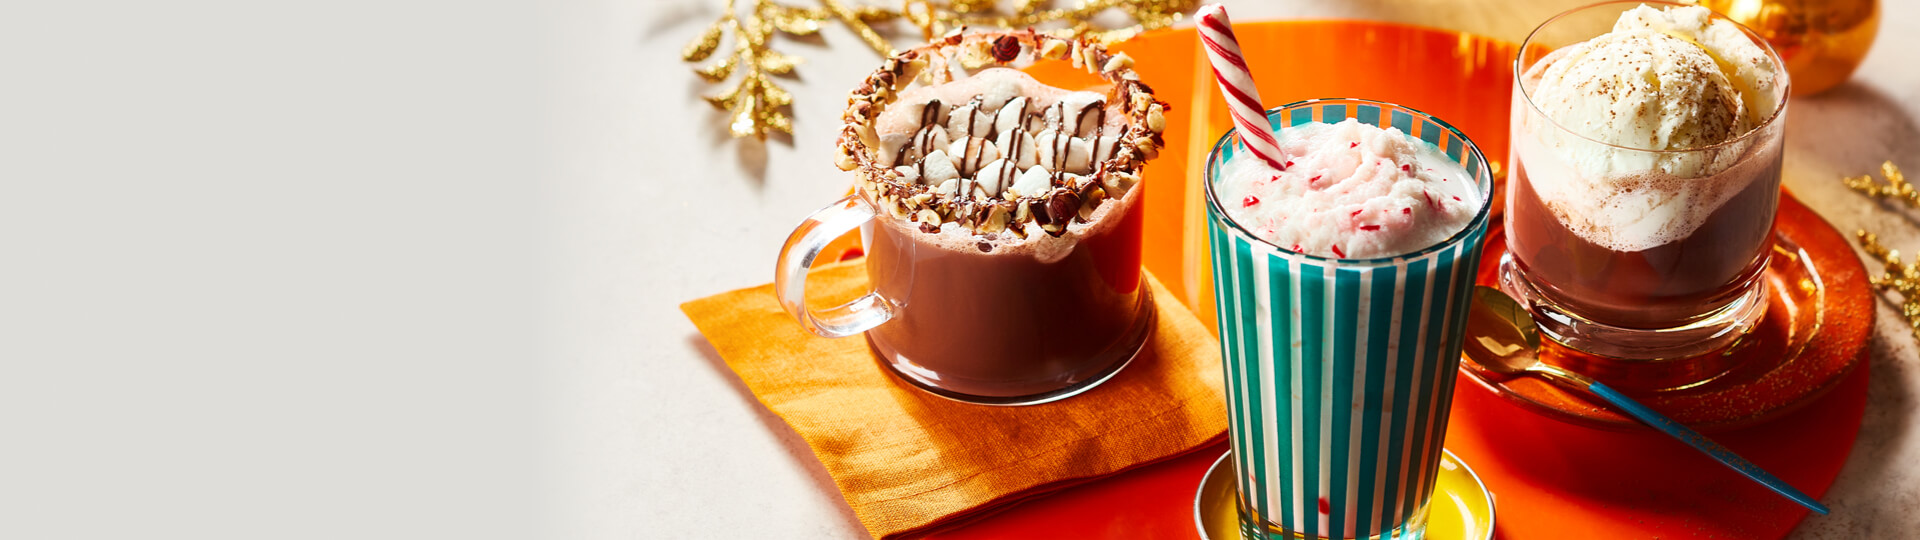 Photo de chocolat chaud aux noisettes, de chocolat chaud blanc glacé et de chocolat chaud blanc fouetté sur un café